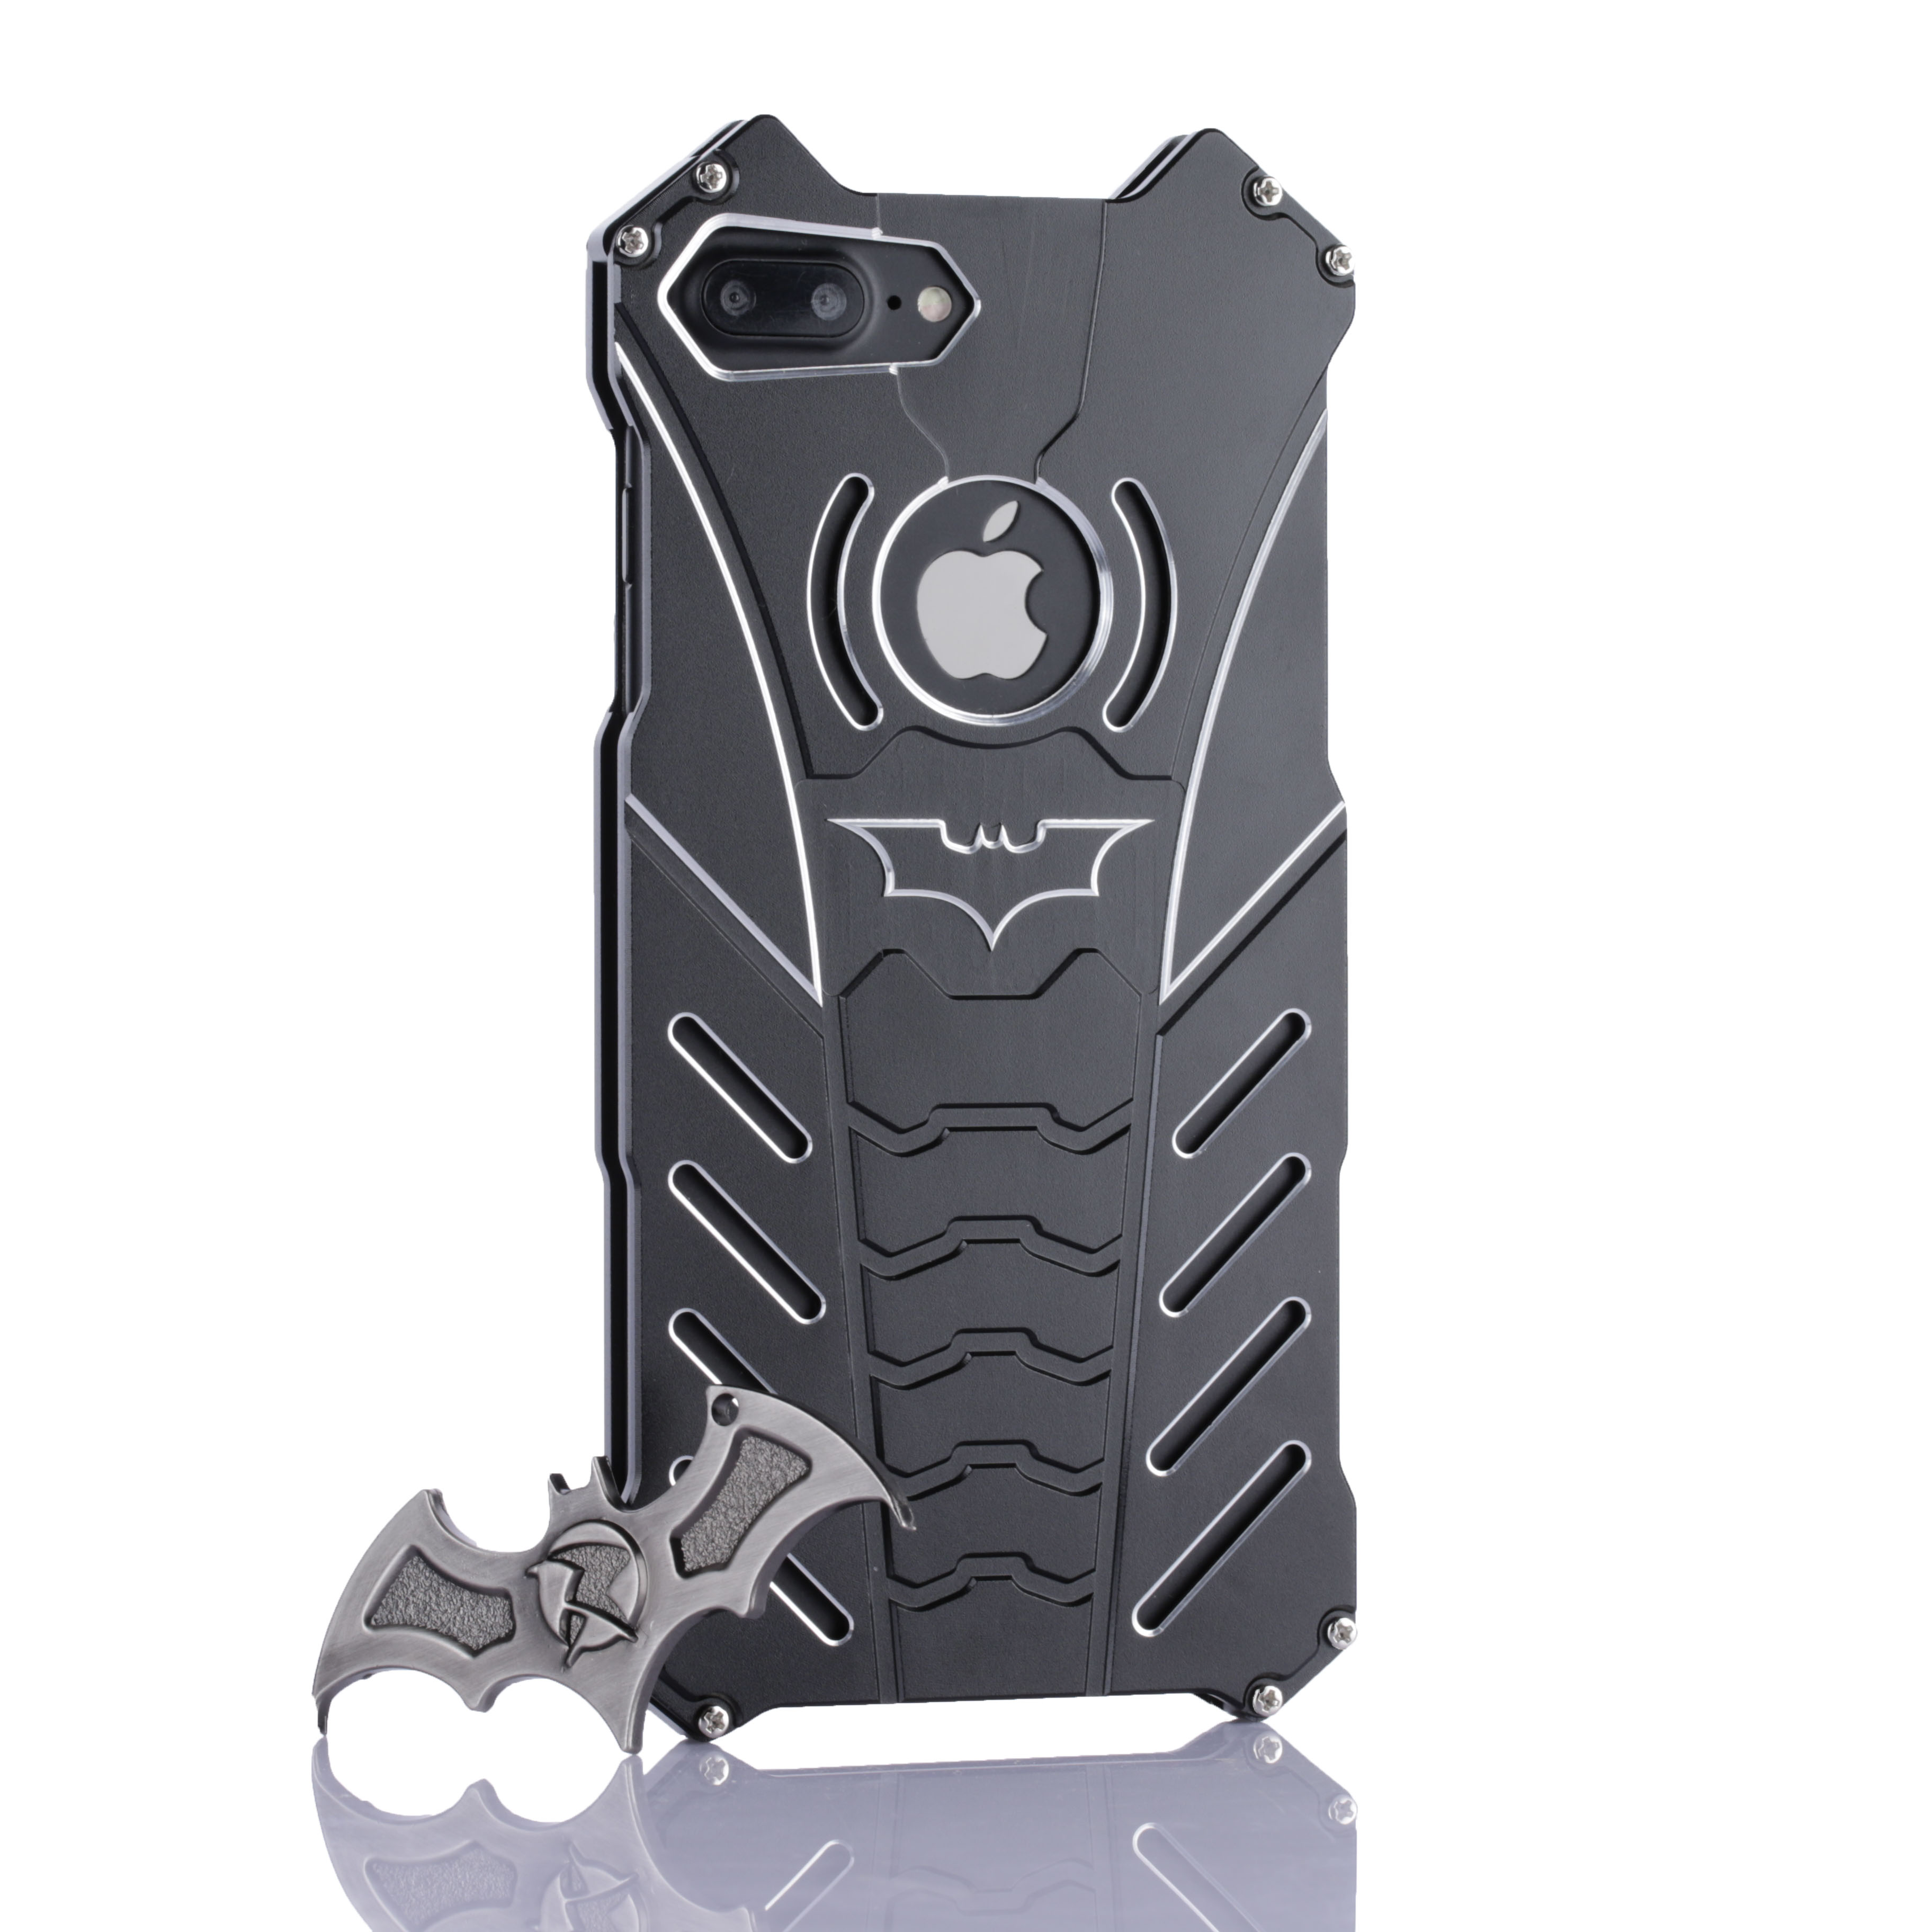 Ốp lưng iPhone 8 Plus : Ốp lưng Batman iPhone 8 Plus